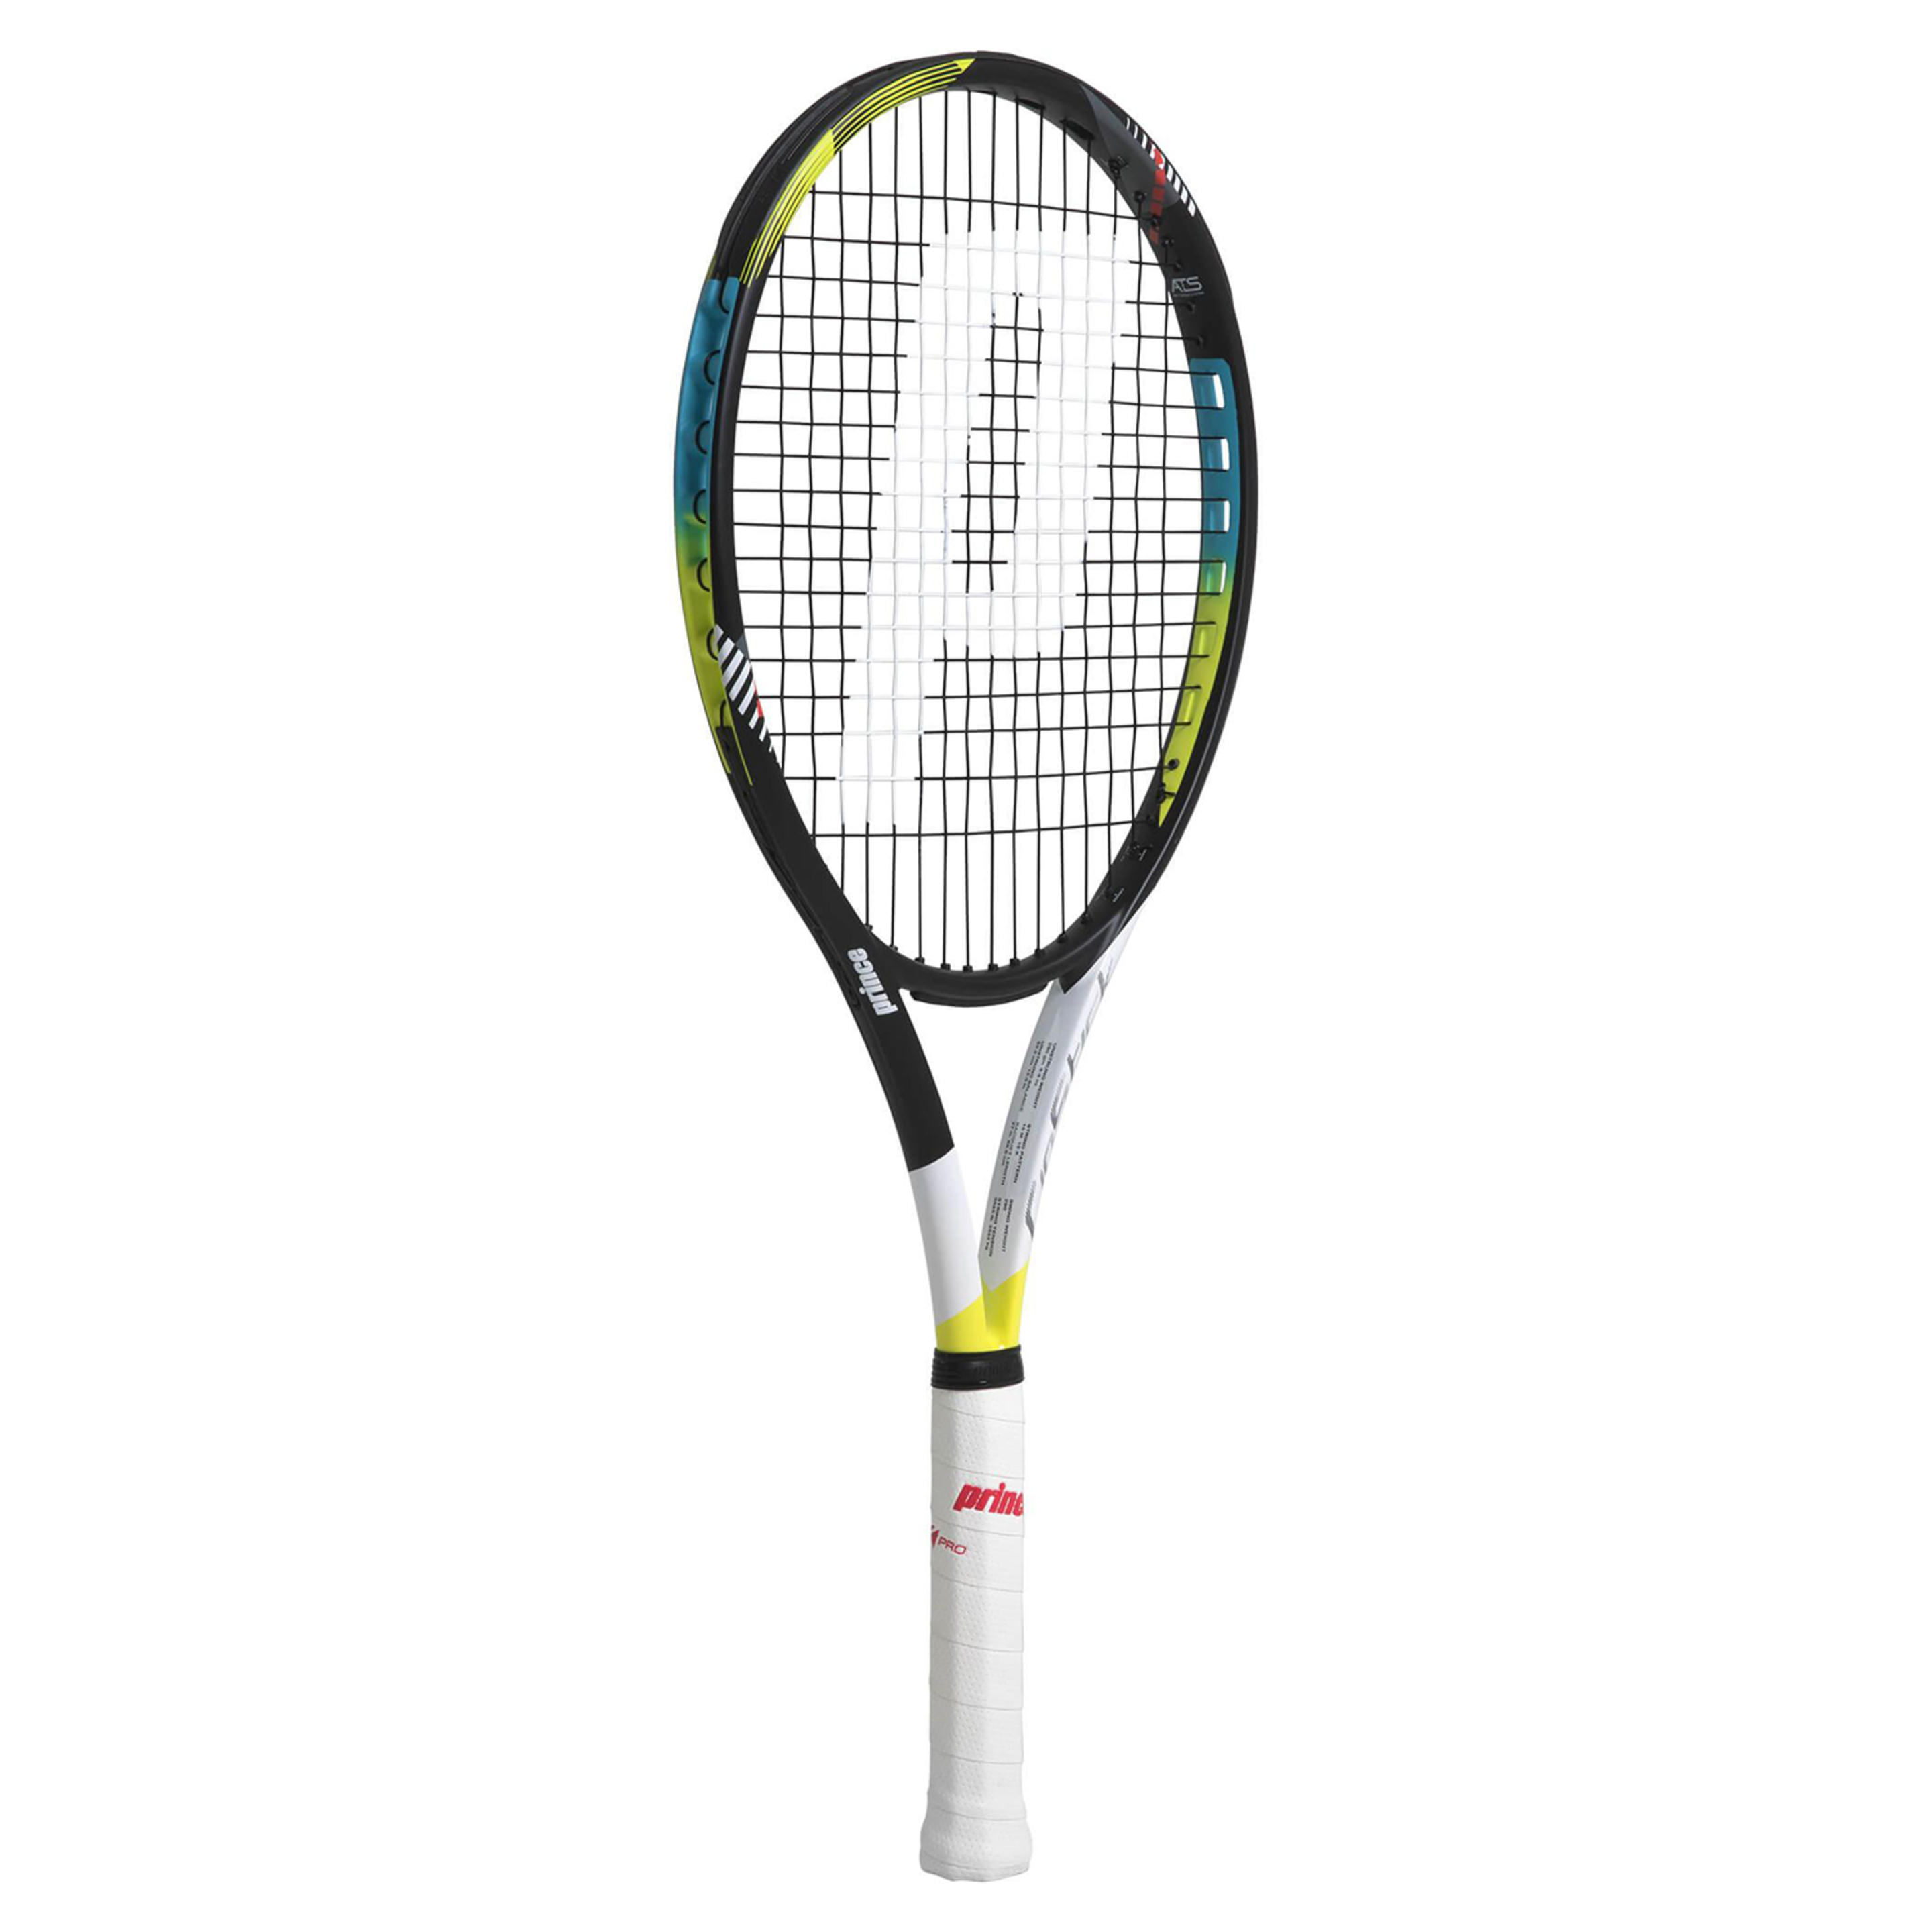 Raqueta De Tenis Prince Ripstick 100 280 G (sin Encordar Y Sin Funda) - multicolor - 